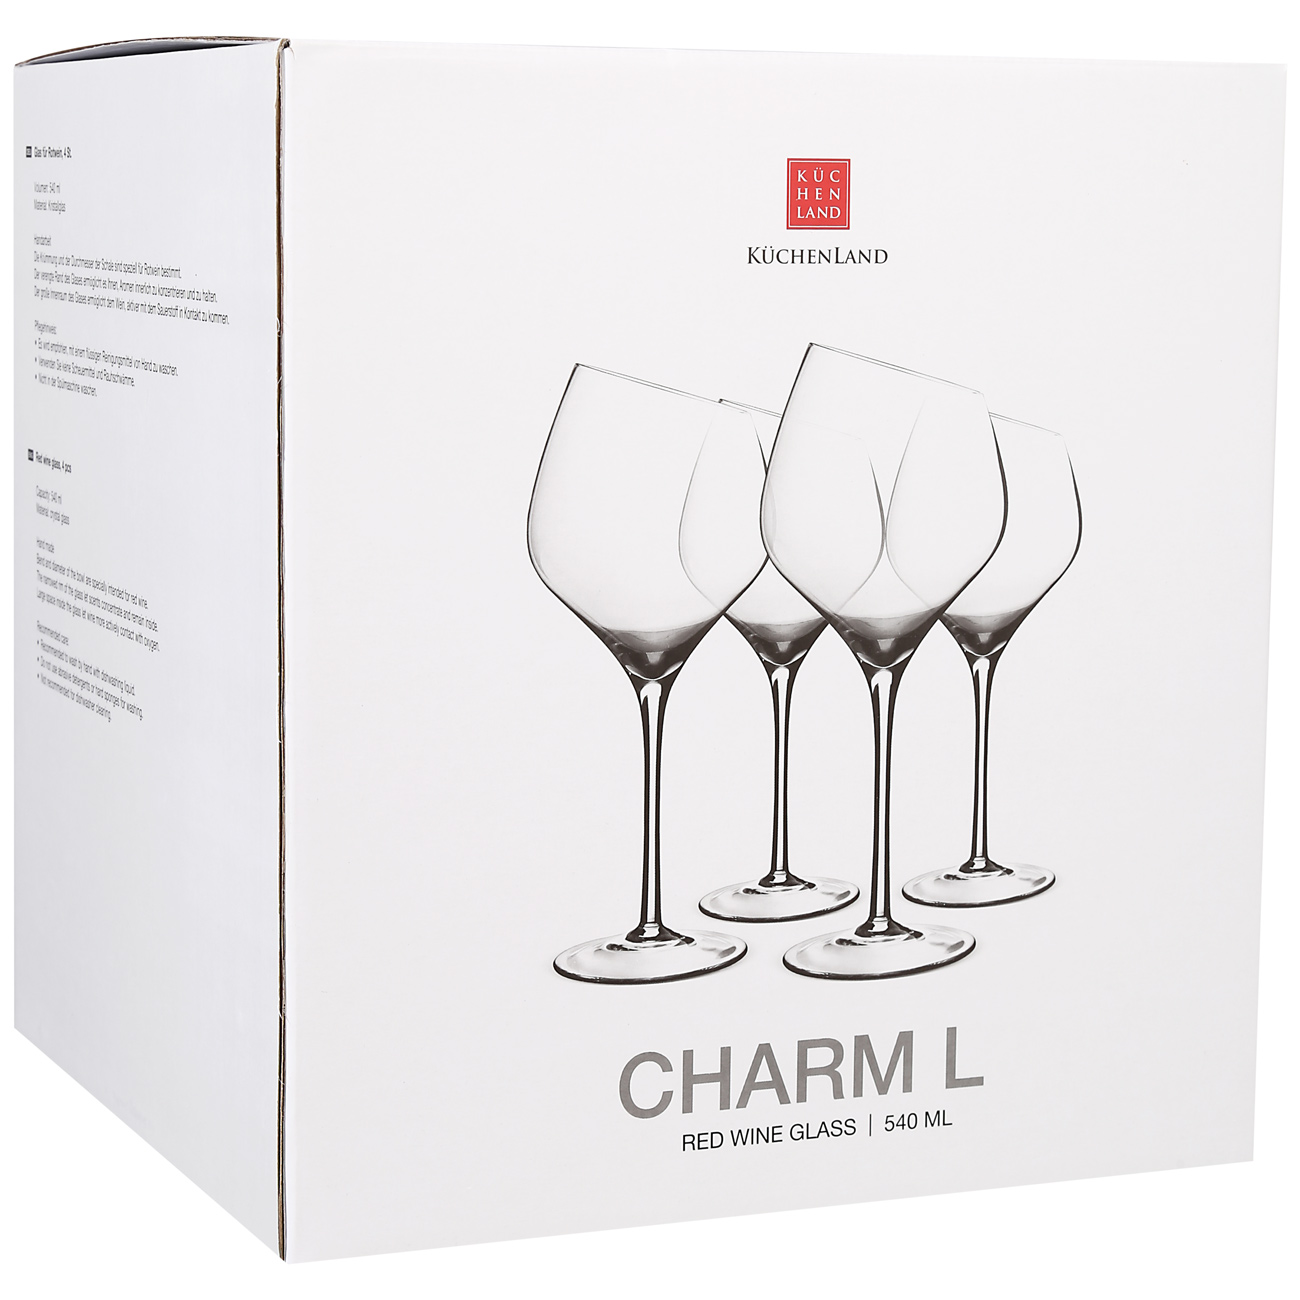 Red wine glass, 560 ml, 4 pcs, Charm L изображение № 2